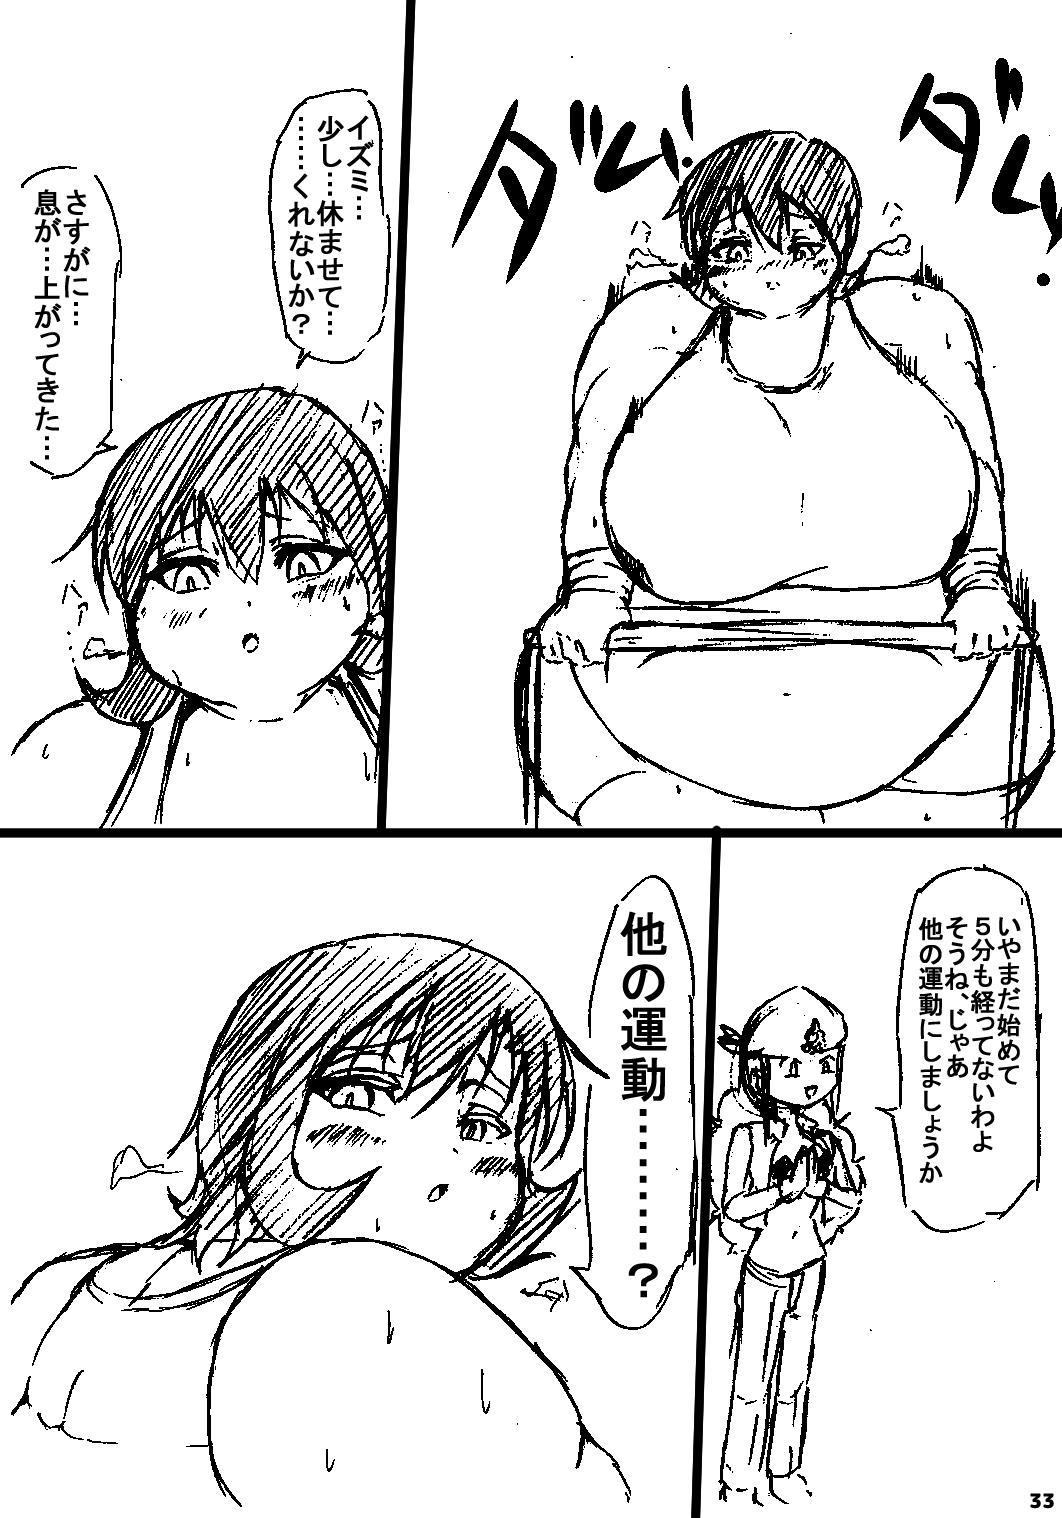 ポケスペカガリ肥満化漫画 31